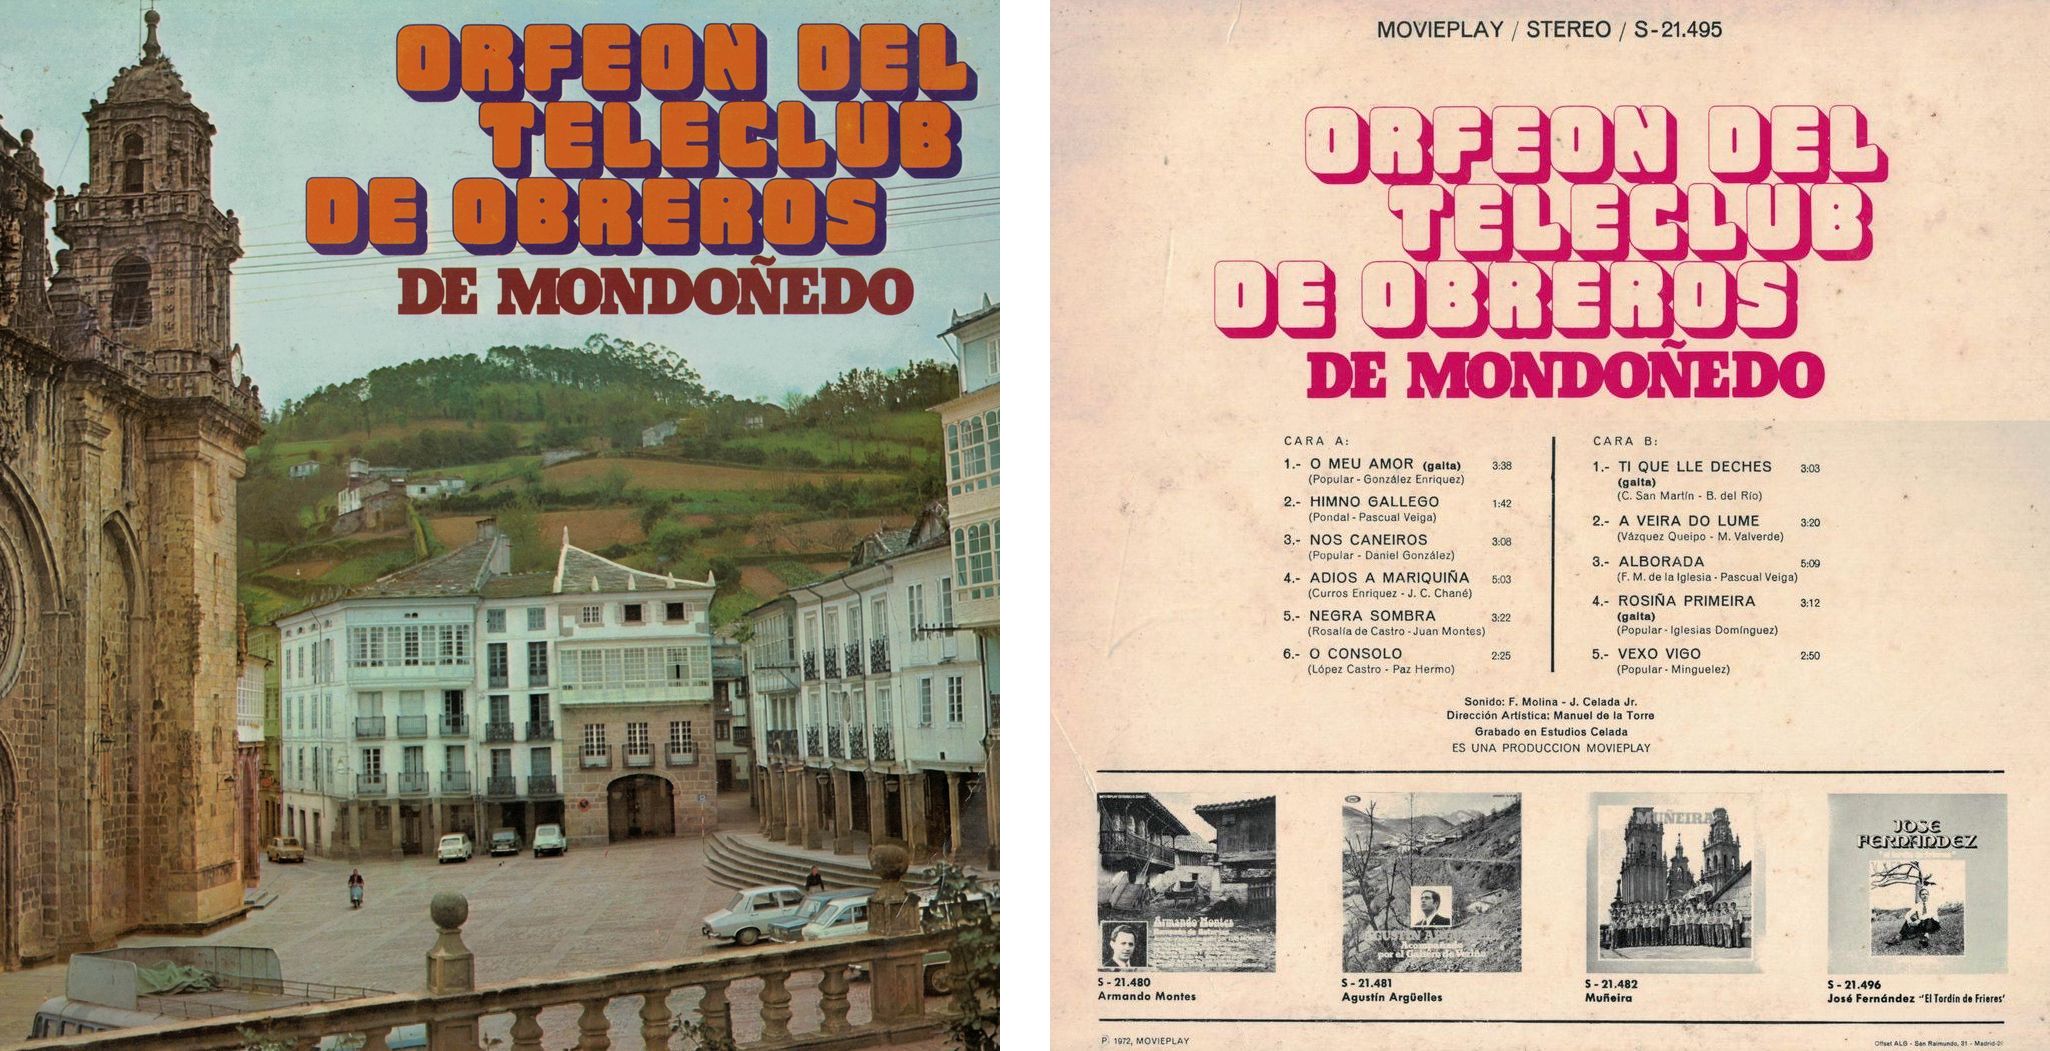 Orfeón del Teleclub de Obreros de Mondoñedo (1972) - Portada